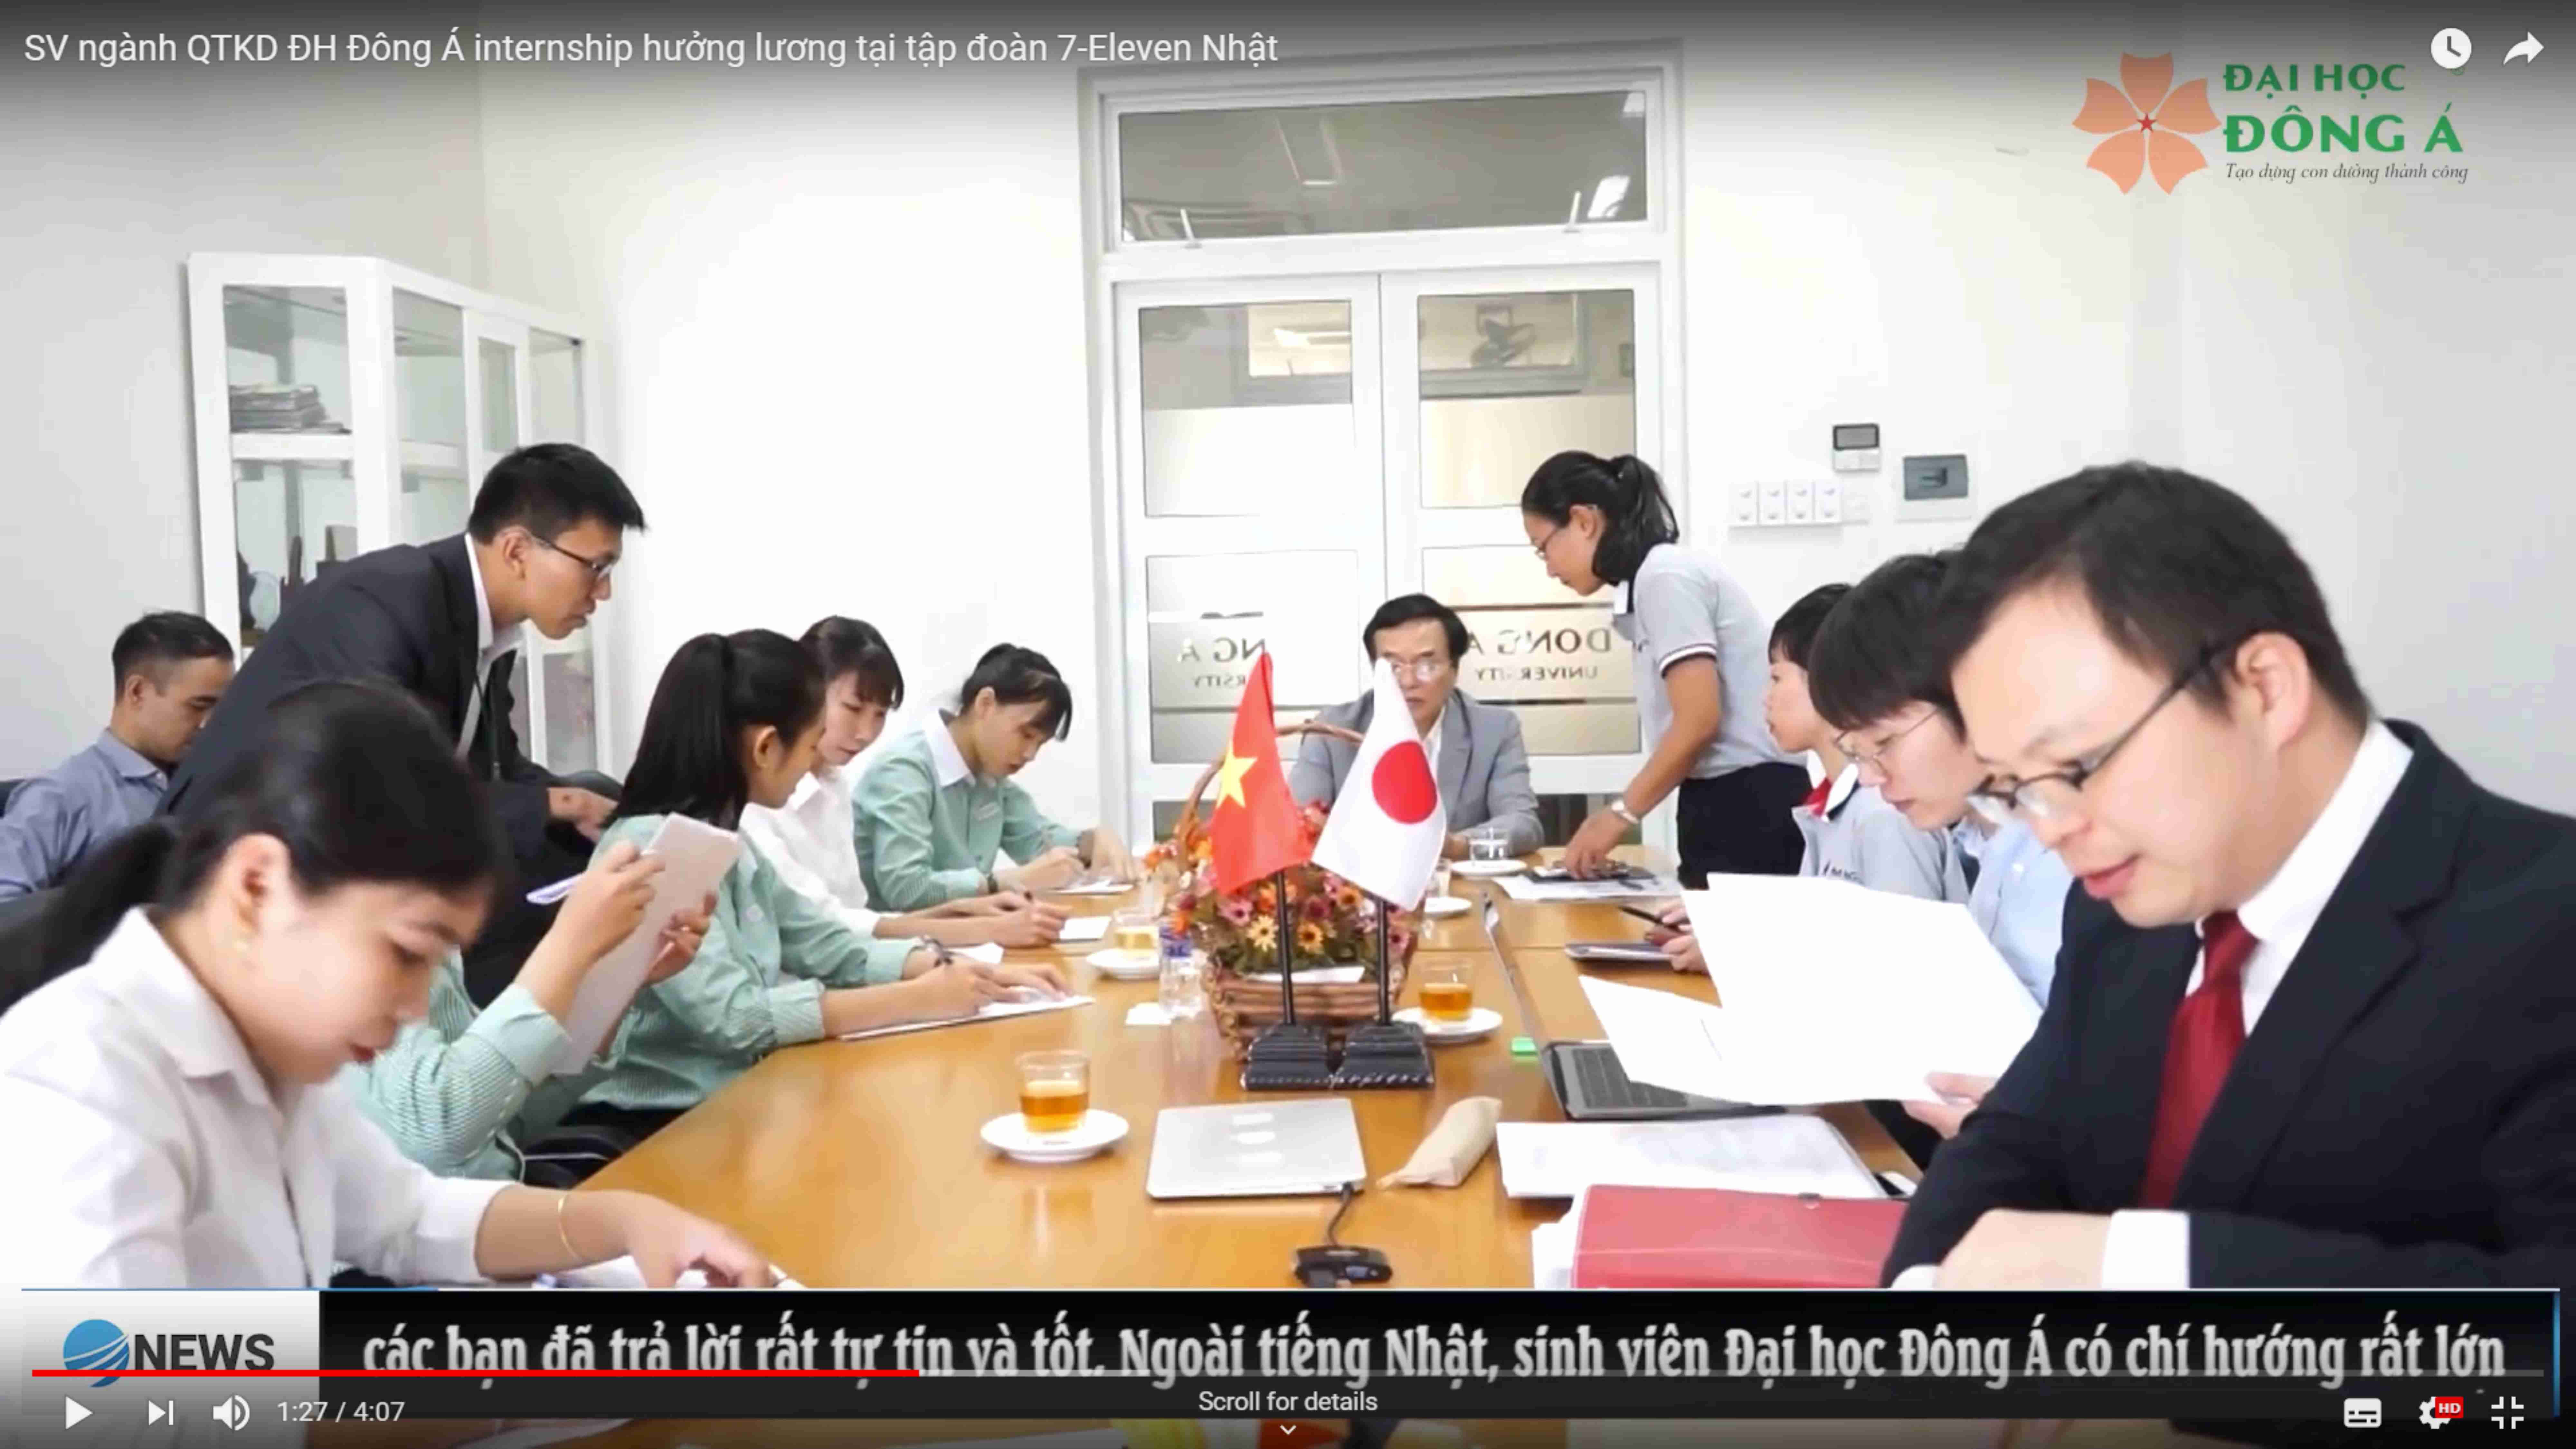 SV ngành QTKD ĐH Đông Á internship hưởng lương tại tập đoàn 7-Eleven Nhật